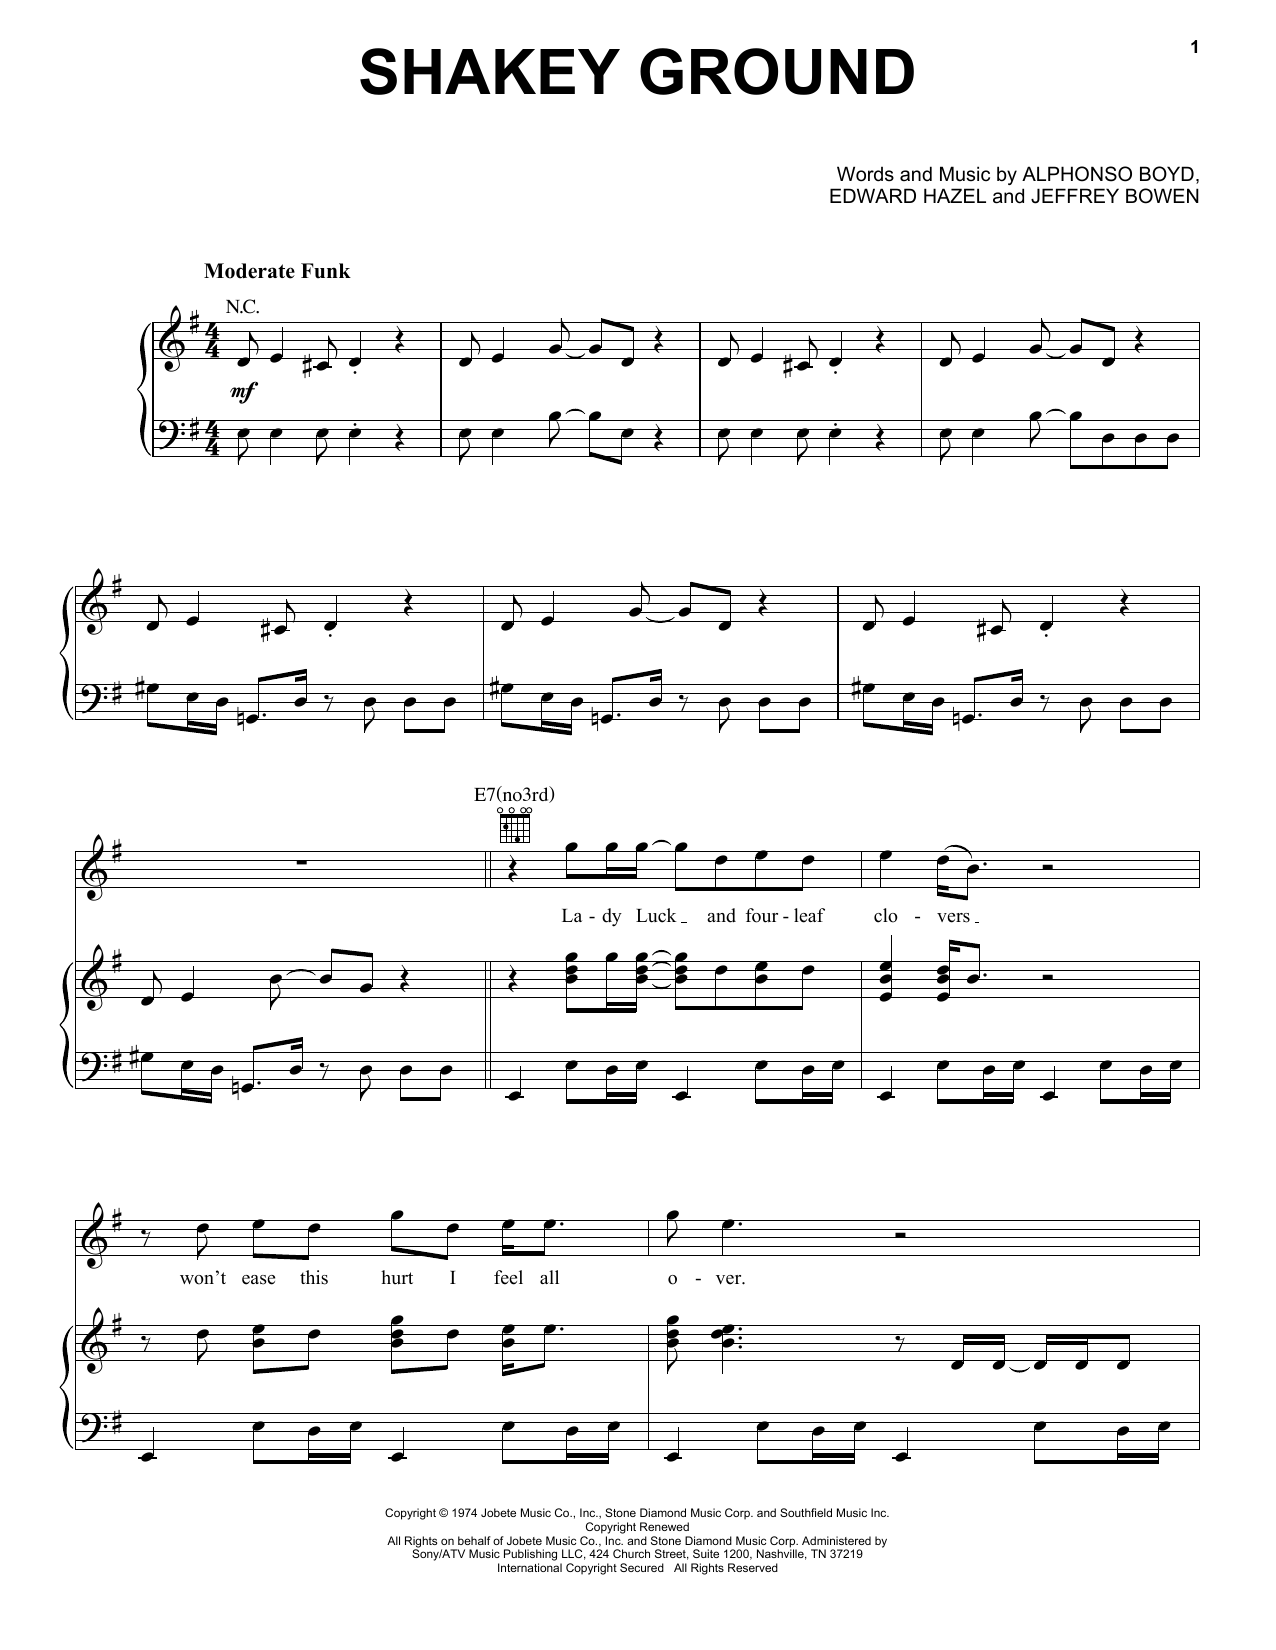 Elton John Shakey Ground Sheet Music Notes & Chords for Bass Guitar Tab - Download or Print PDF